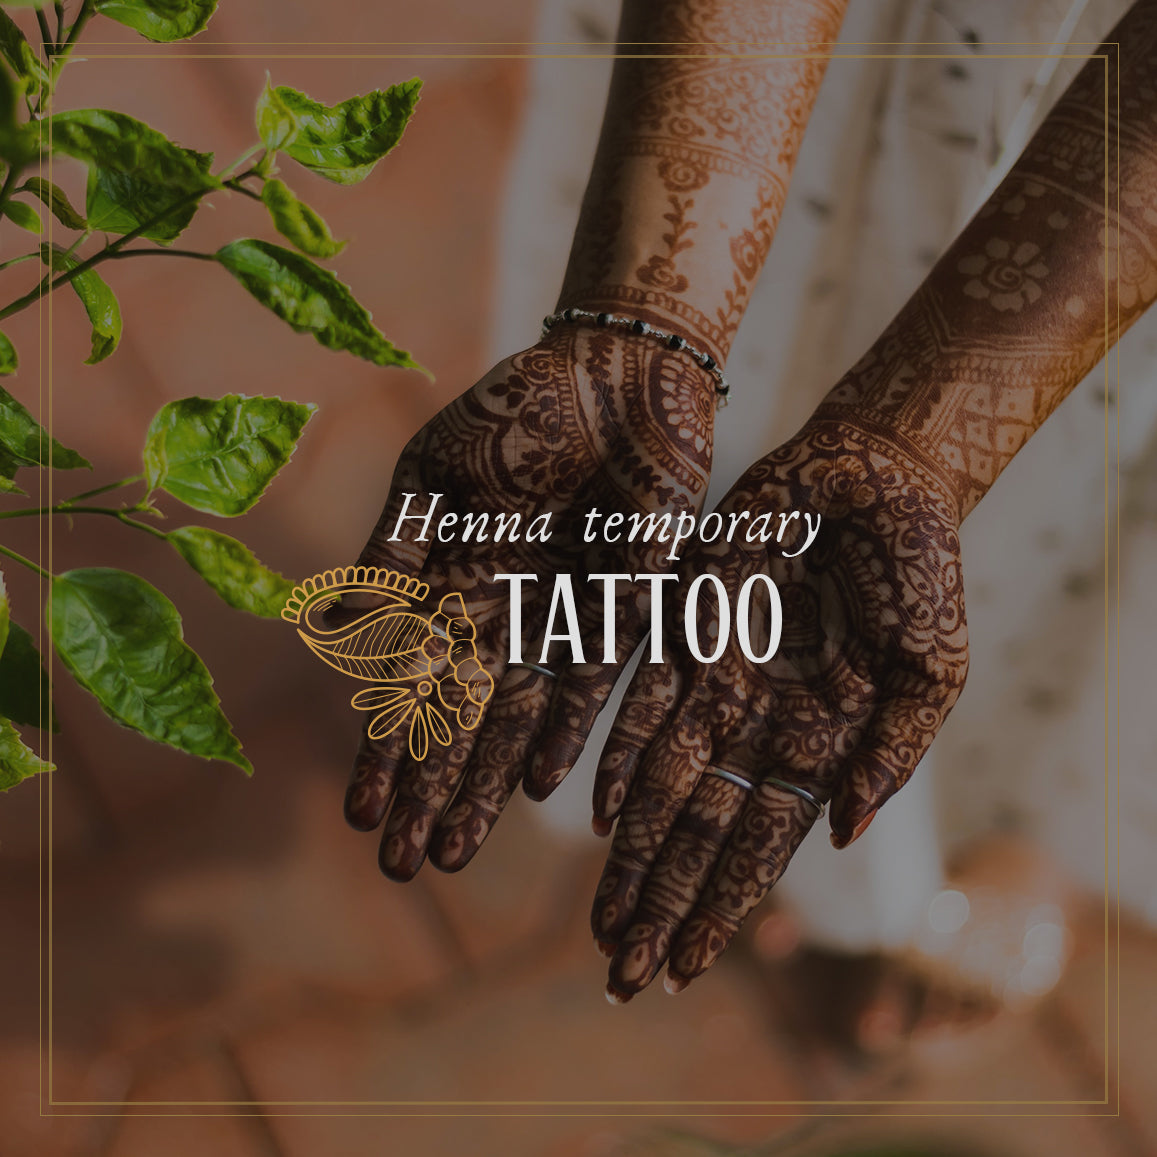 Henna temporary tattoo